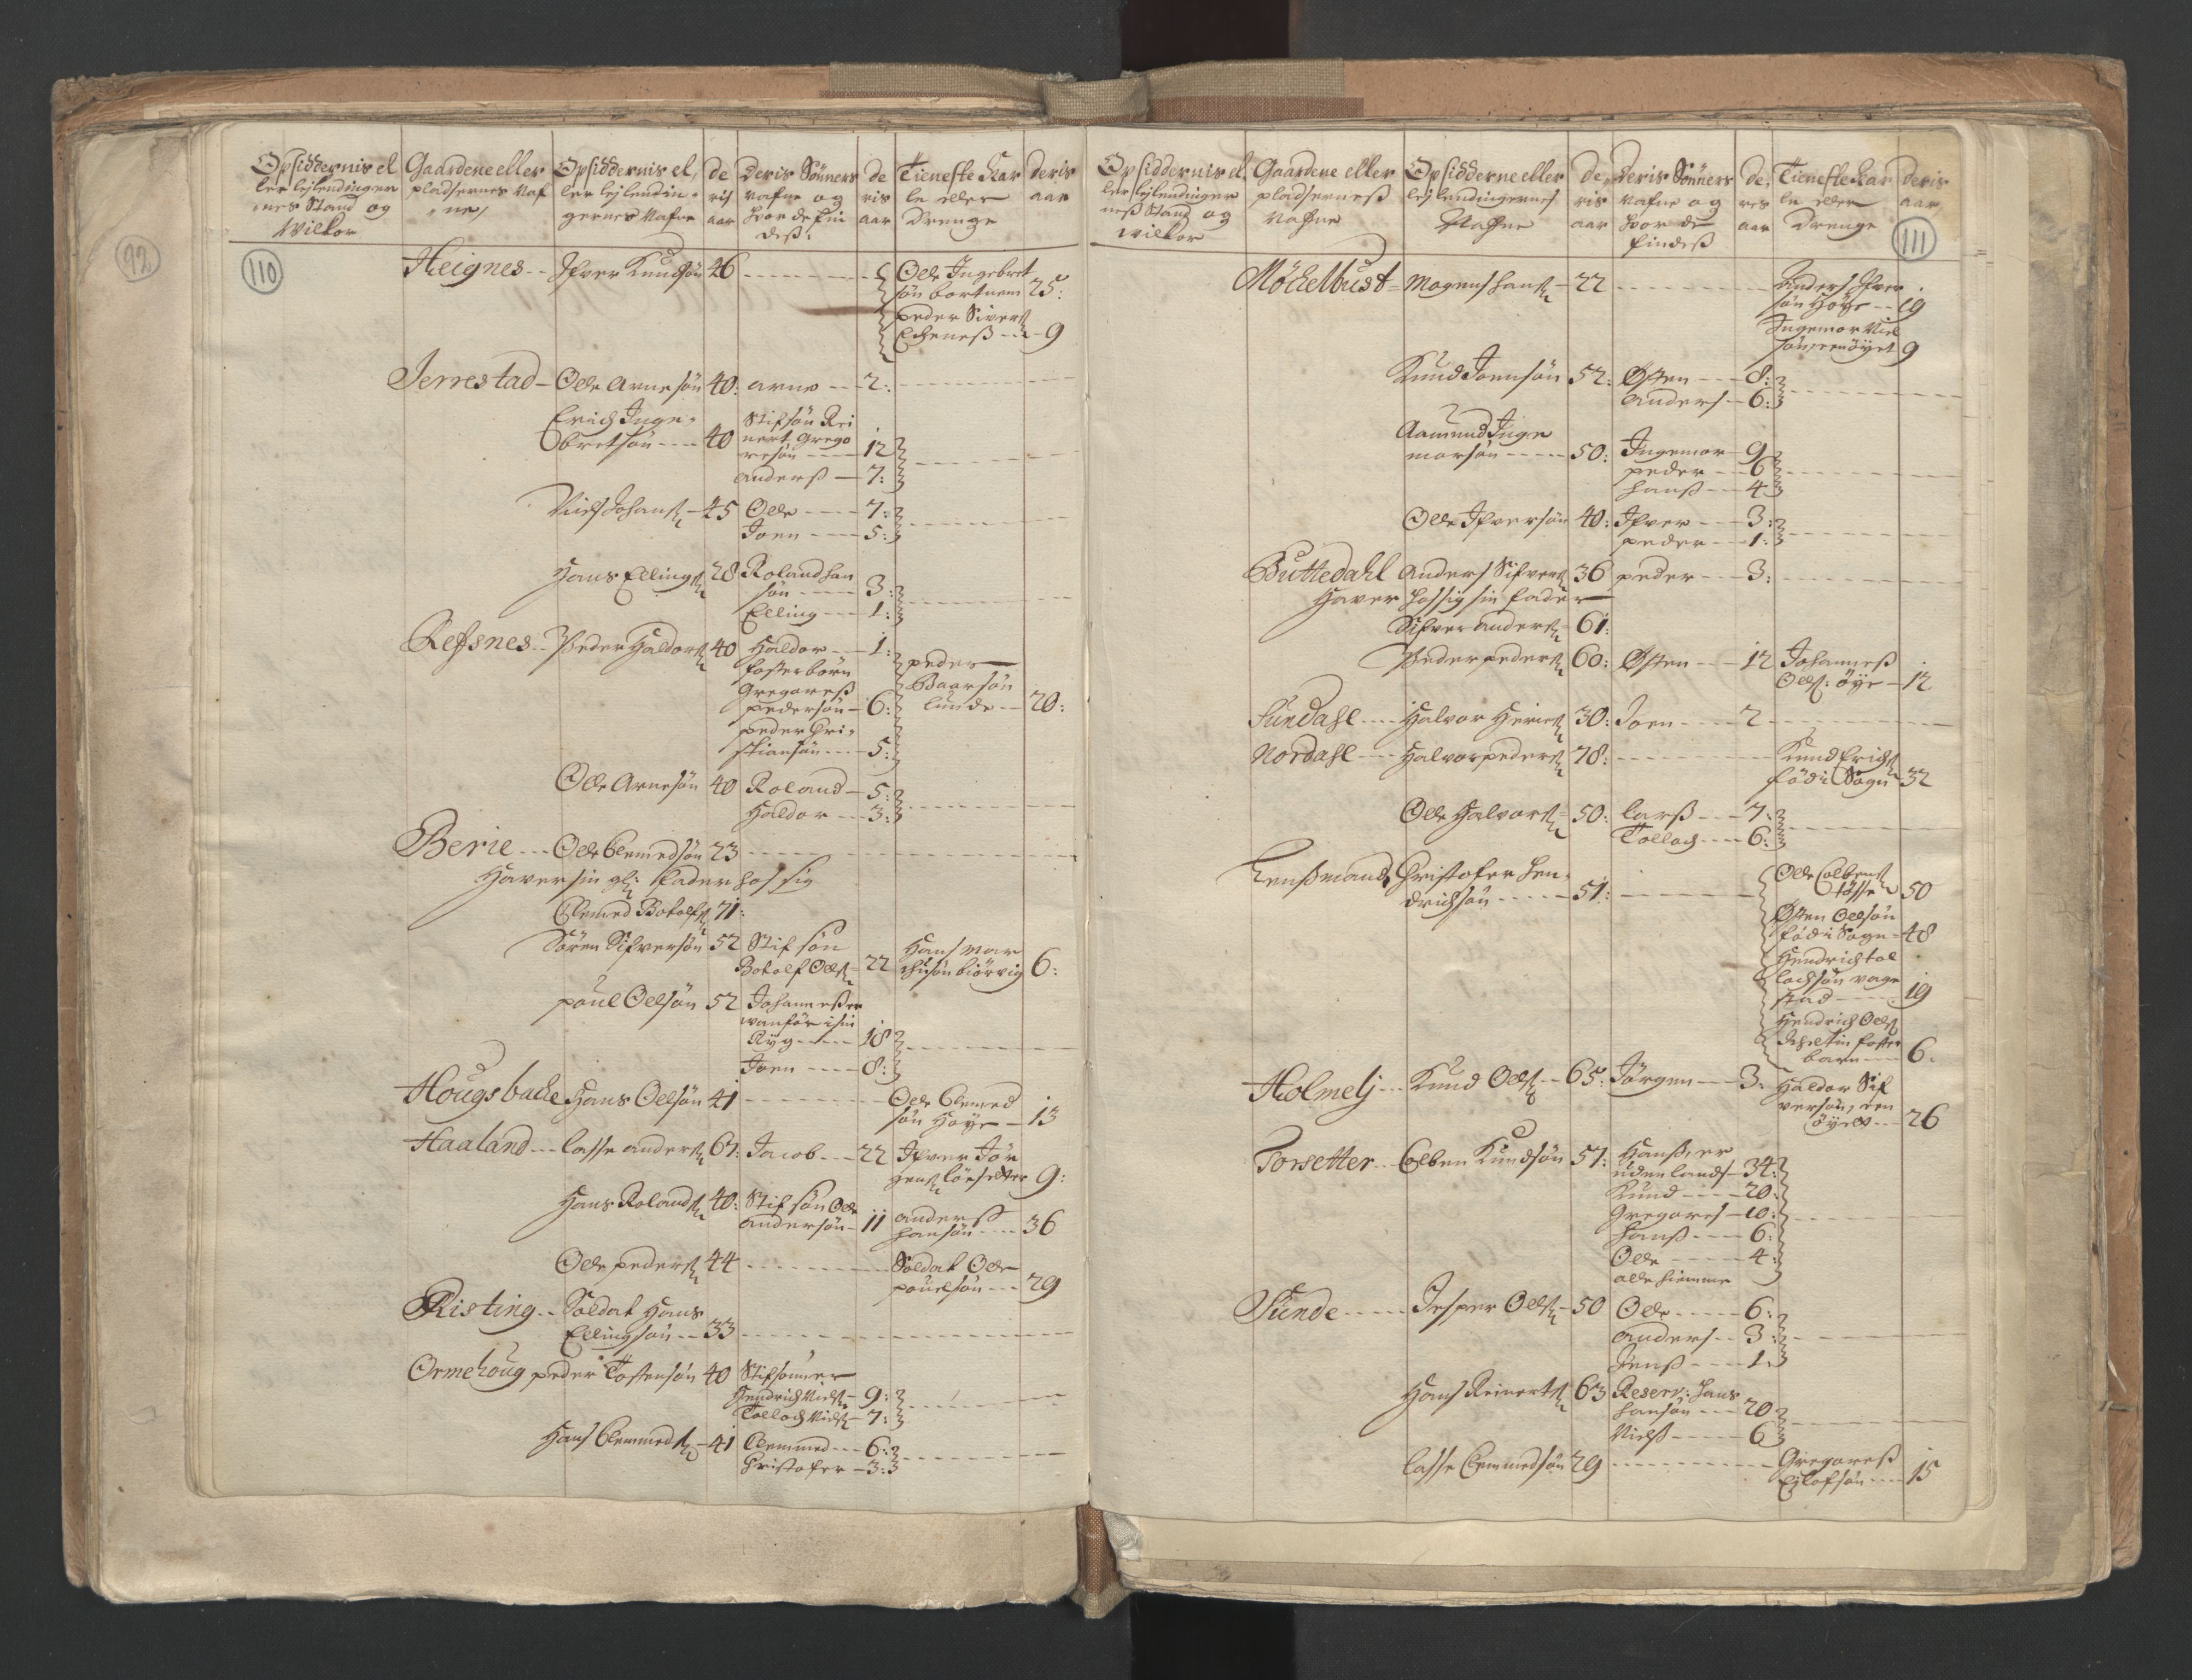 RA, Census (manntall) 1701, no. 9: Sunnfjord fogderi, Nordfjord fogderi and Svanø birk, 1701, p. 110-111